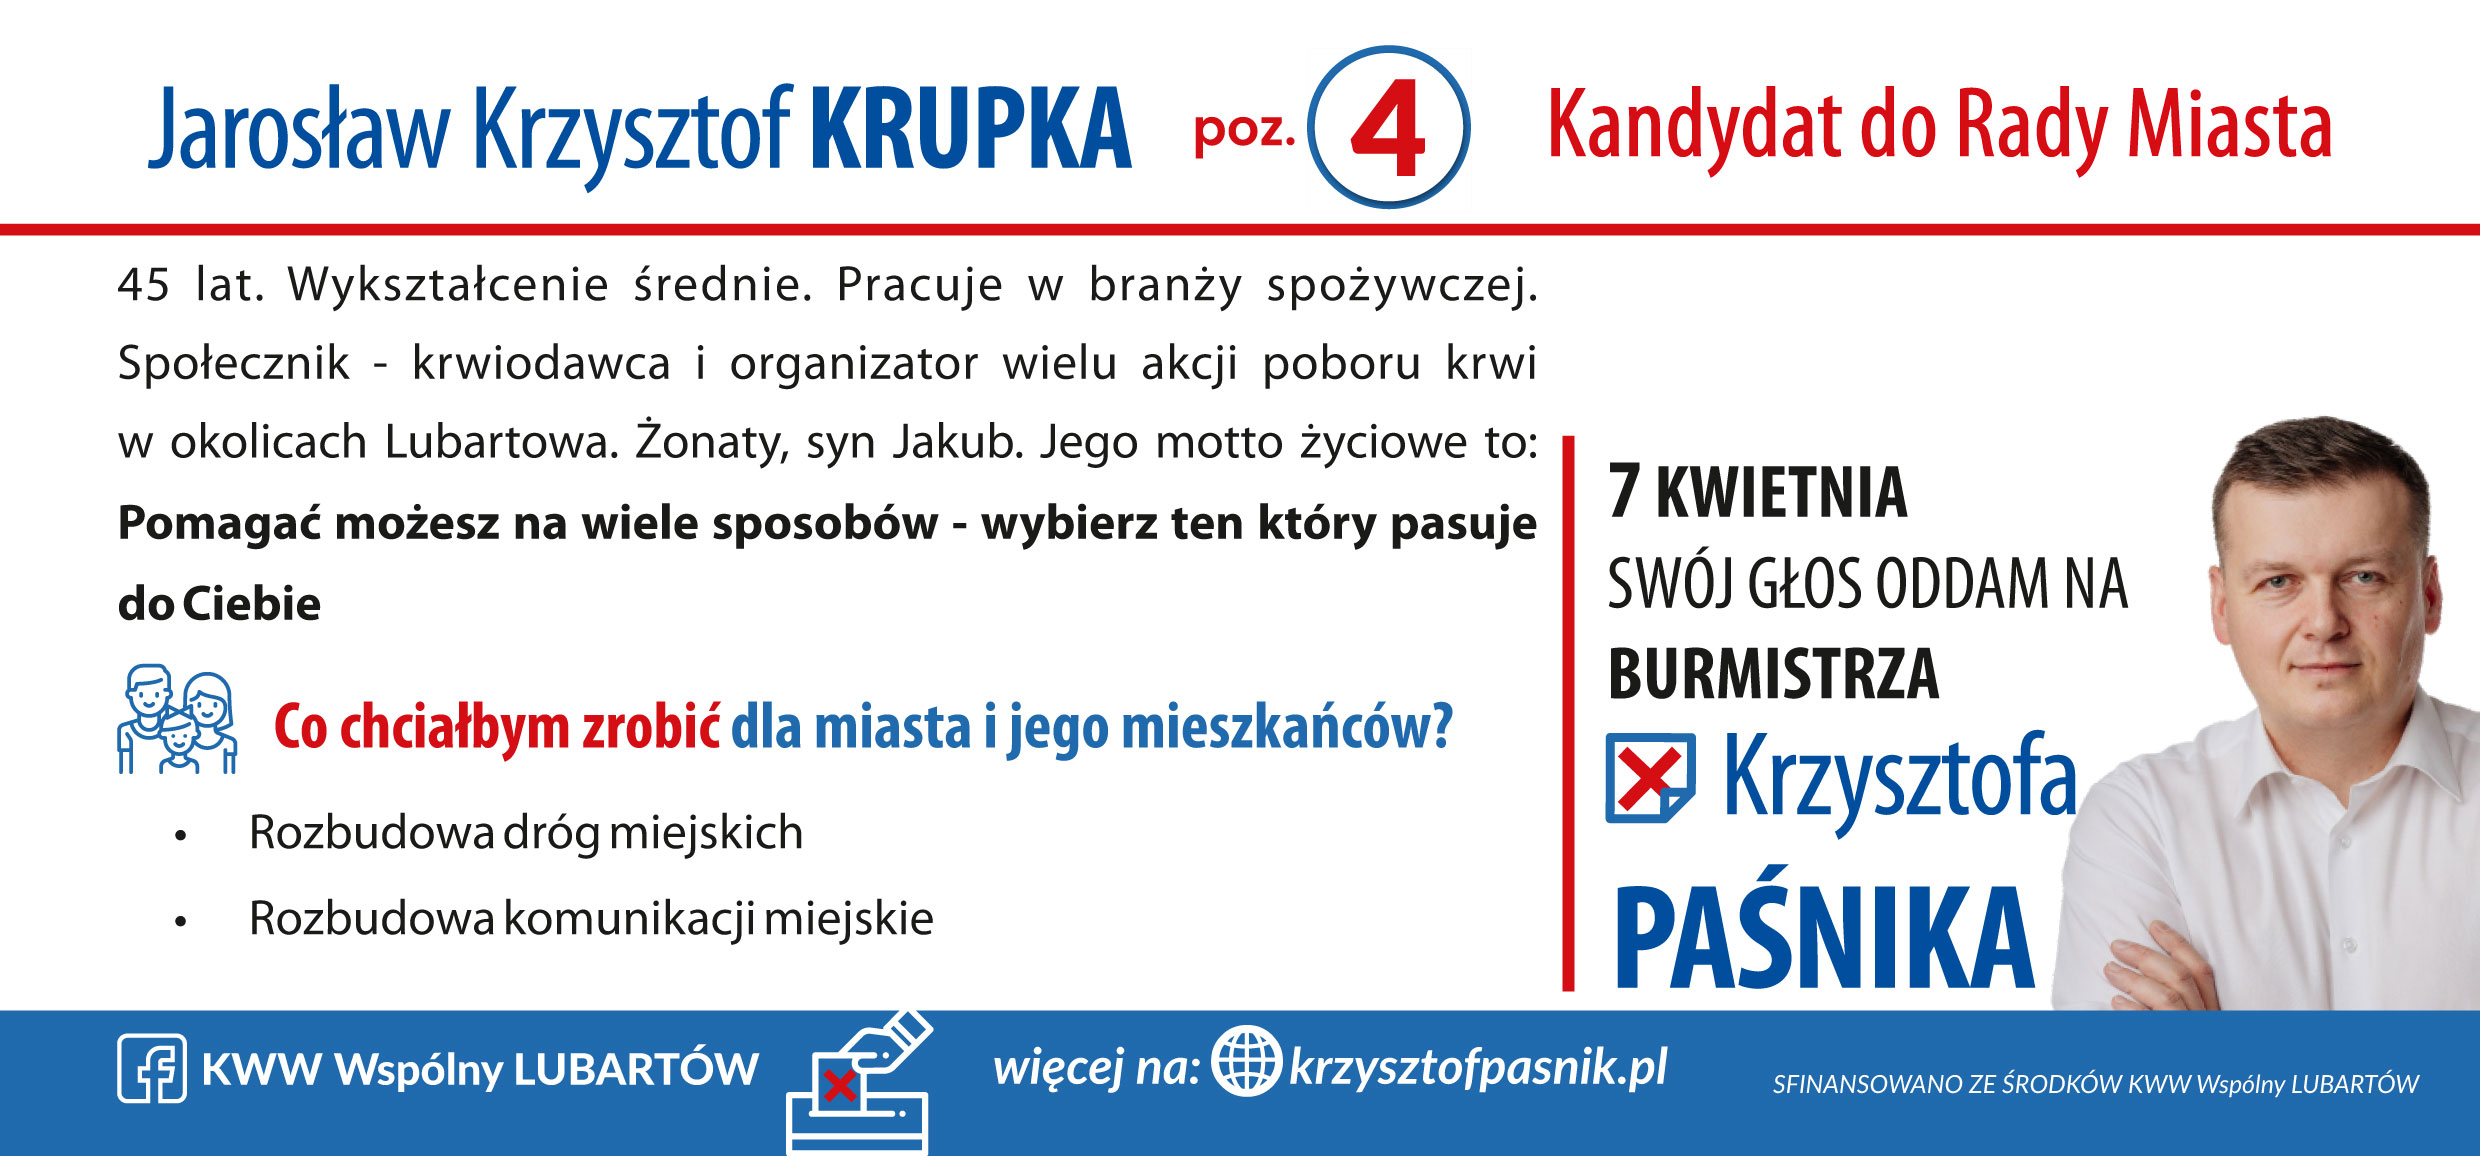 KRUPKA_Jarosław-2